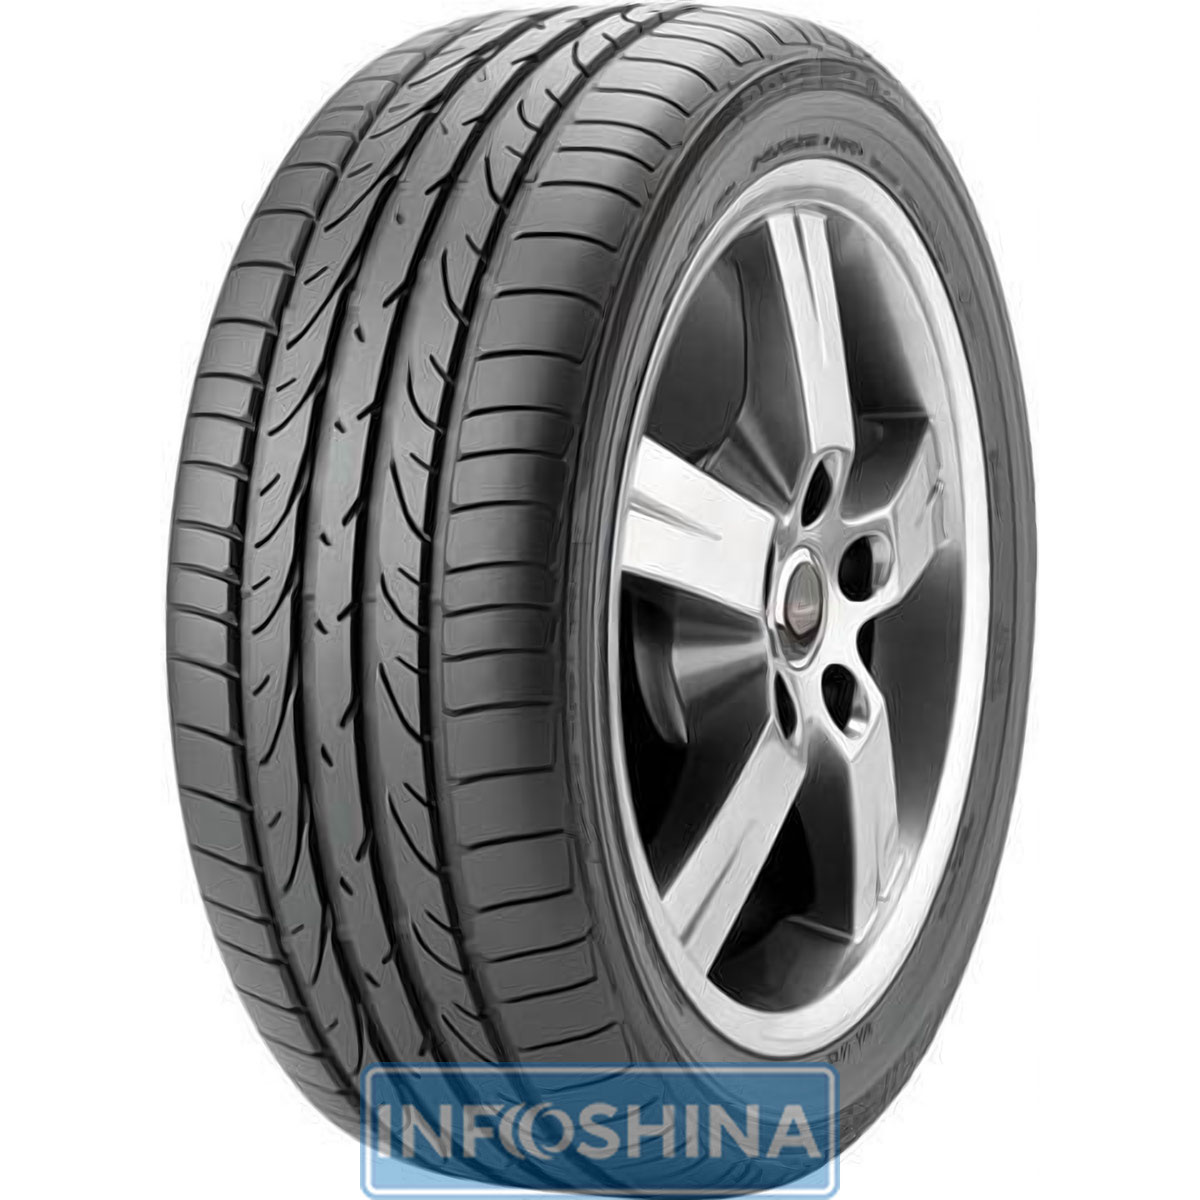 Купить шины Bridgestone Potenza RE050 225/40 R18 88Y